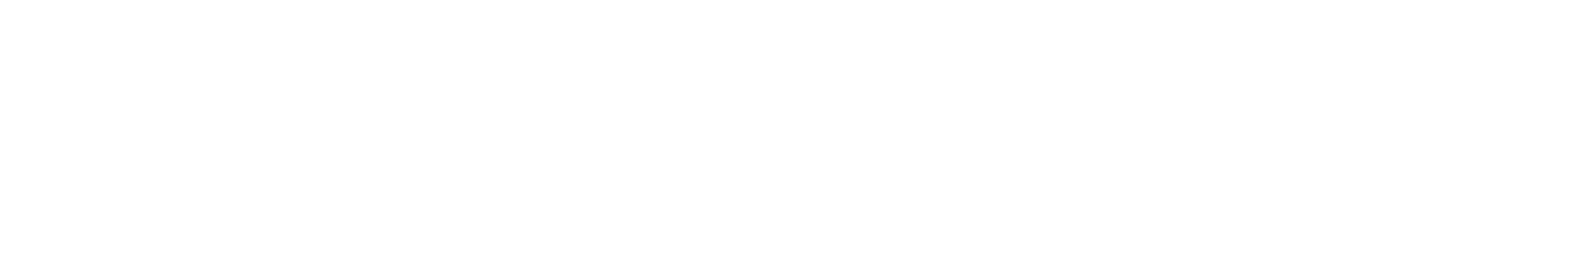 Steris logo large for dark backgrounds (transparent PNG)